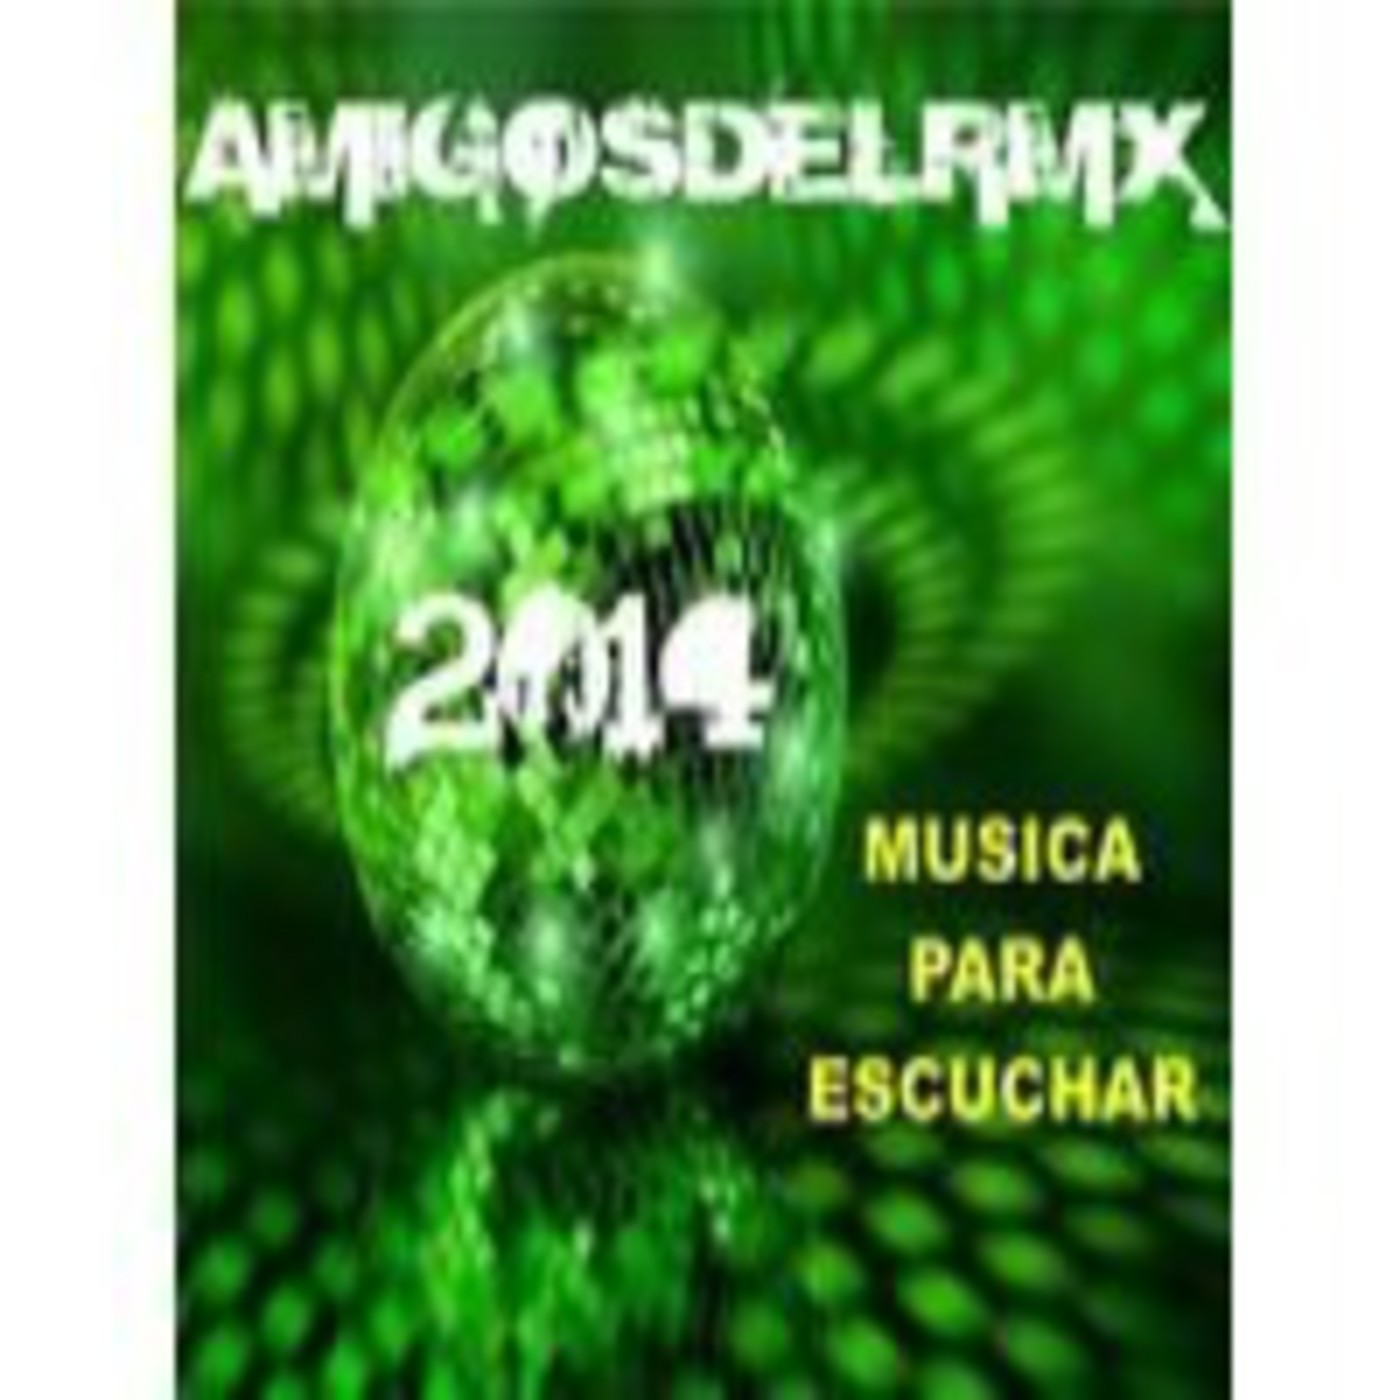 Descargar Musica Cumbia Argentina Mp3 2013